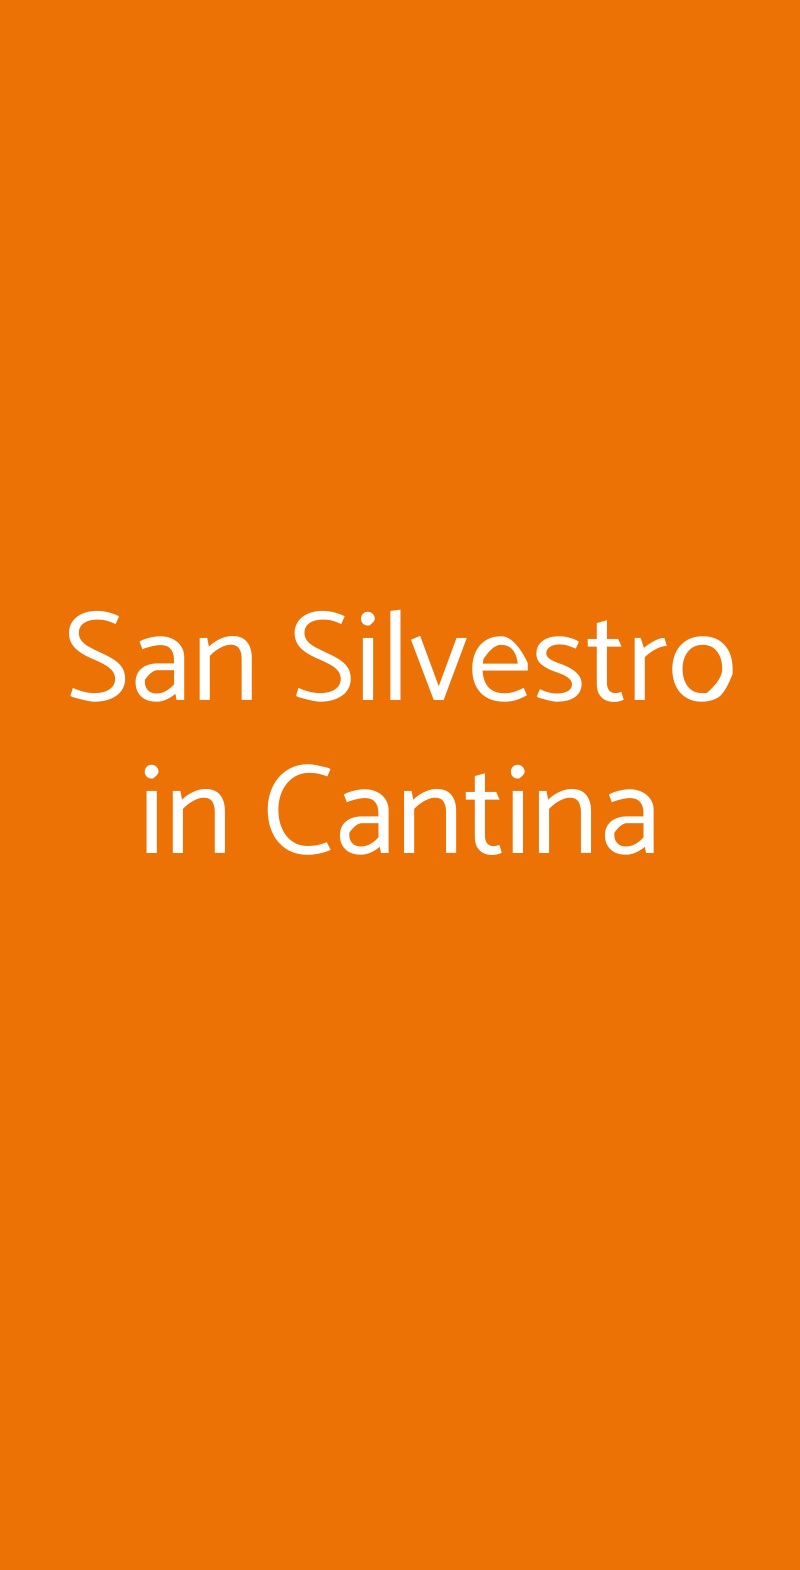 San Silvestro in Cantina Bologna menù 1 pagina